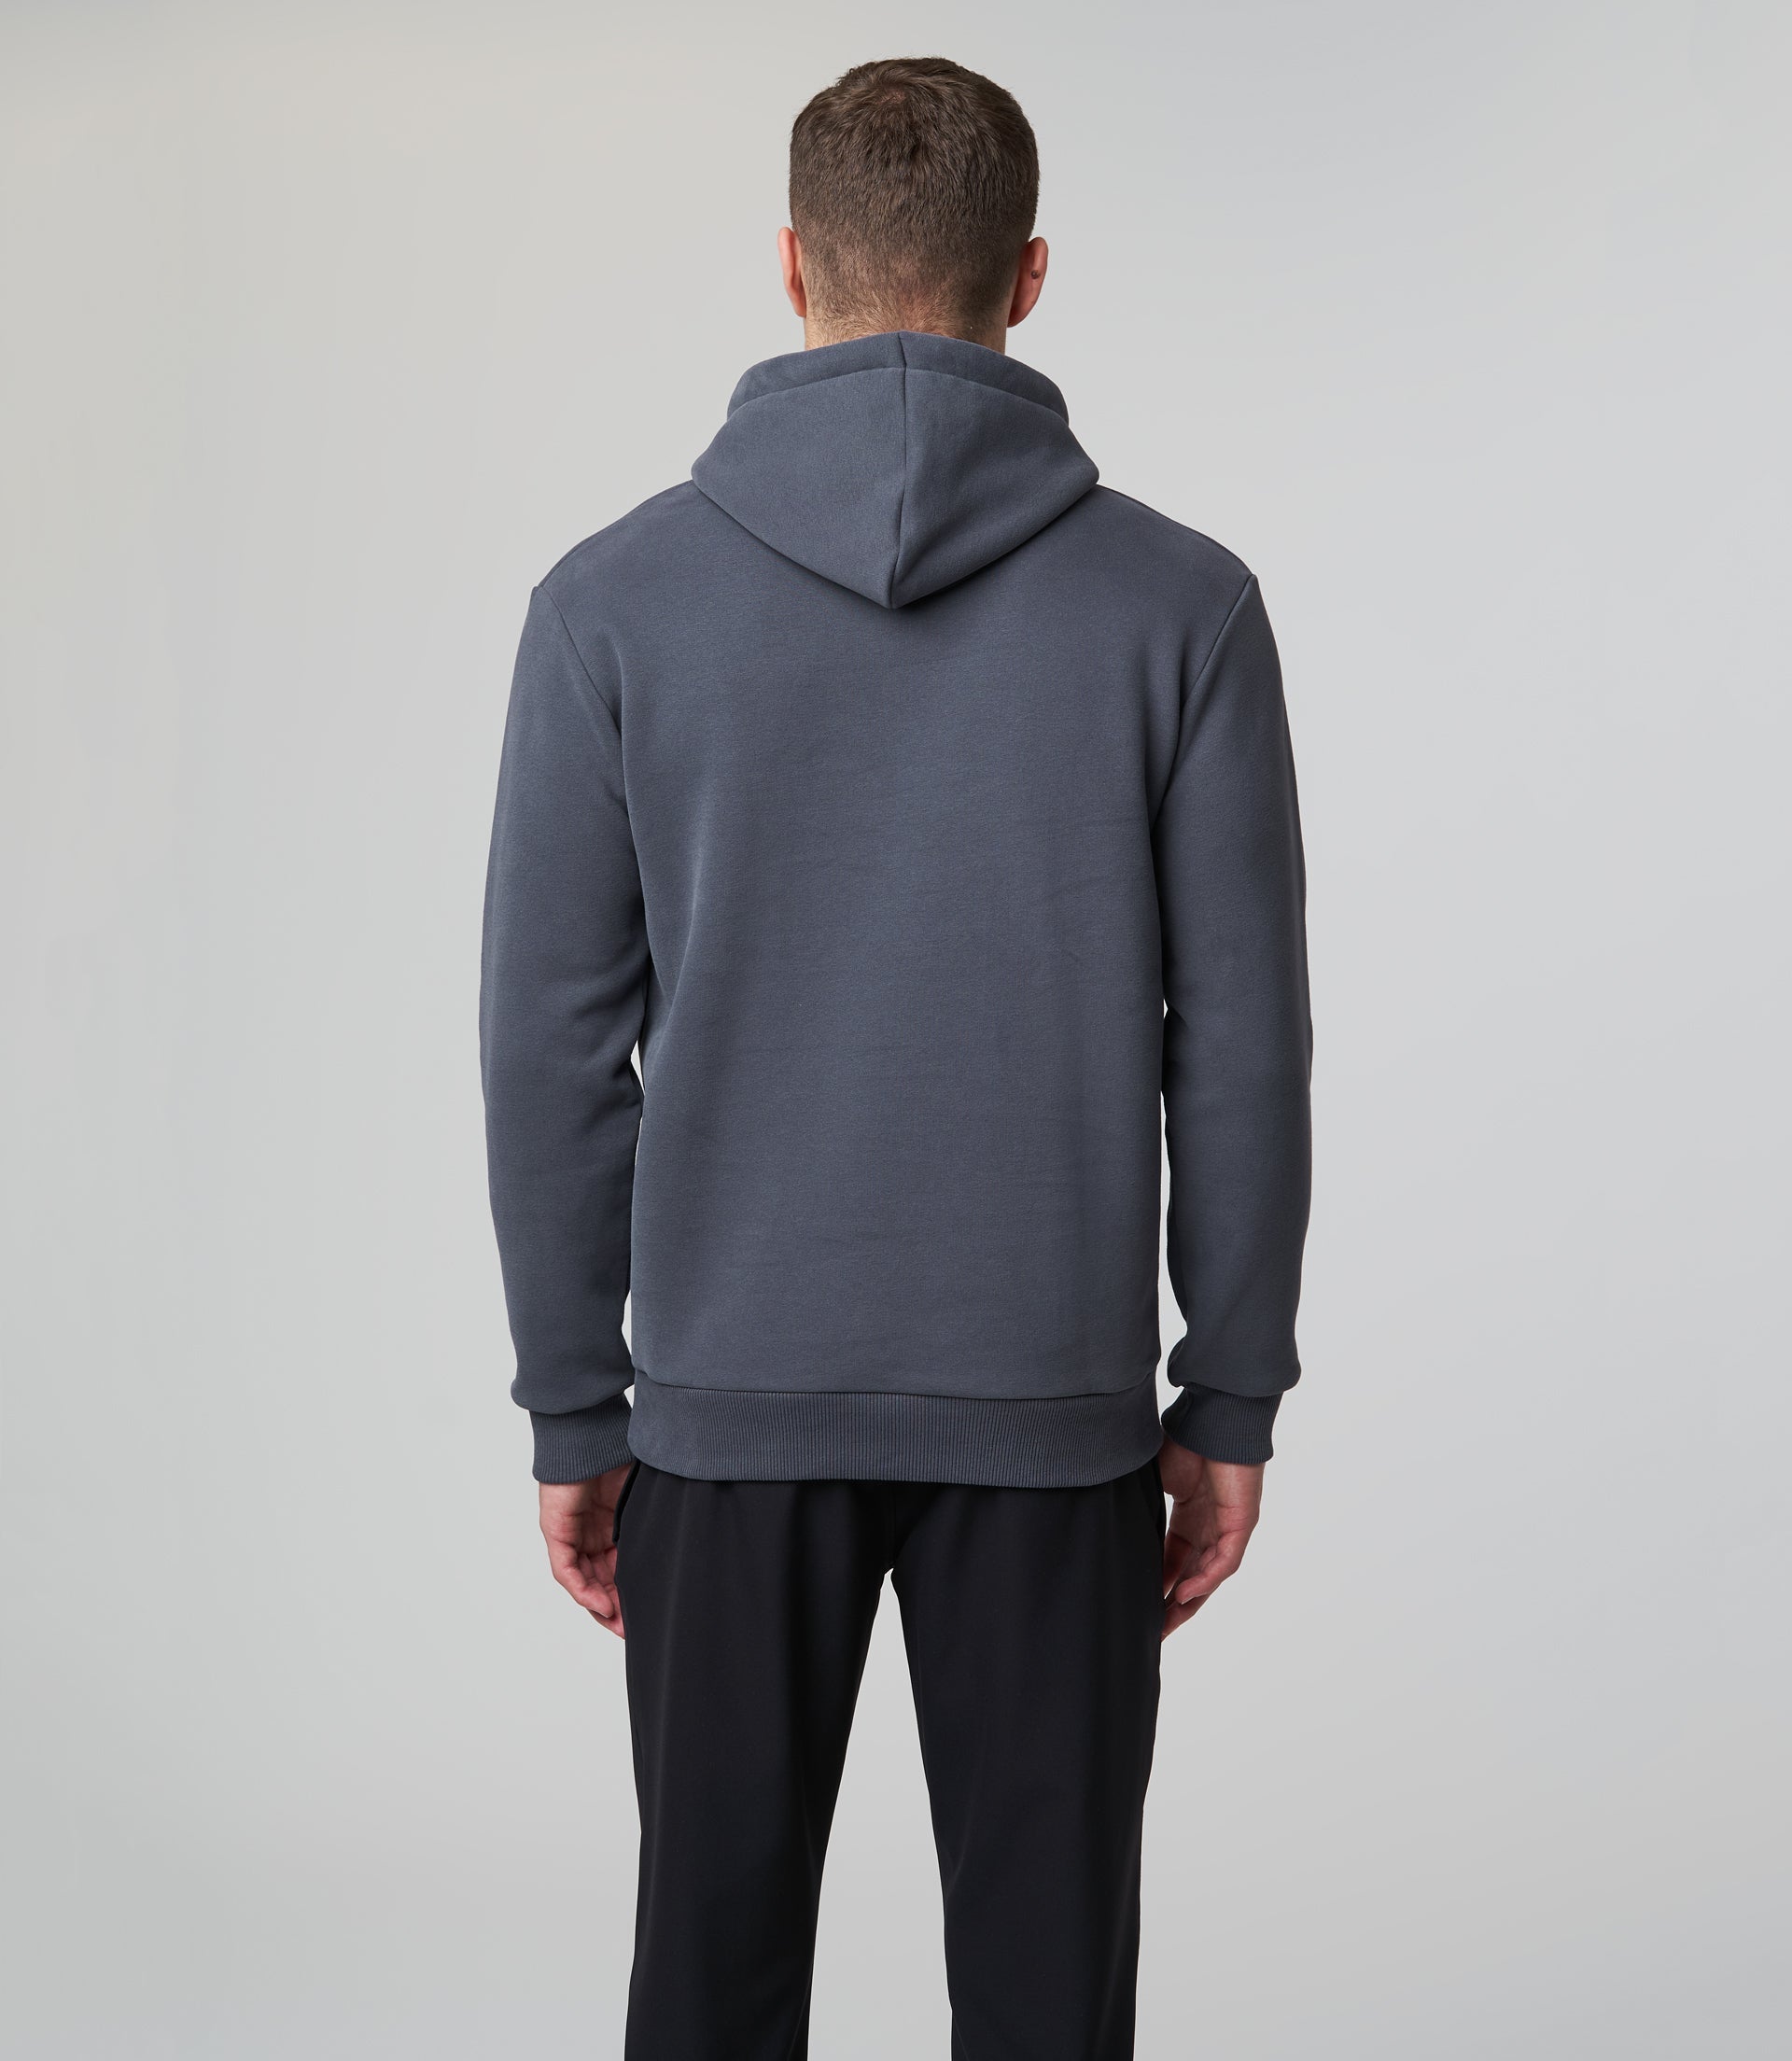 Mclaren F1 Men's Speedmark Logo Hooded Sweatshirt Dark Grey